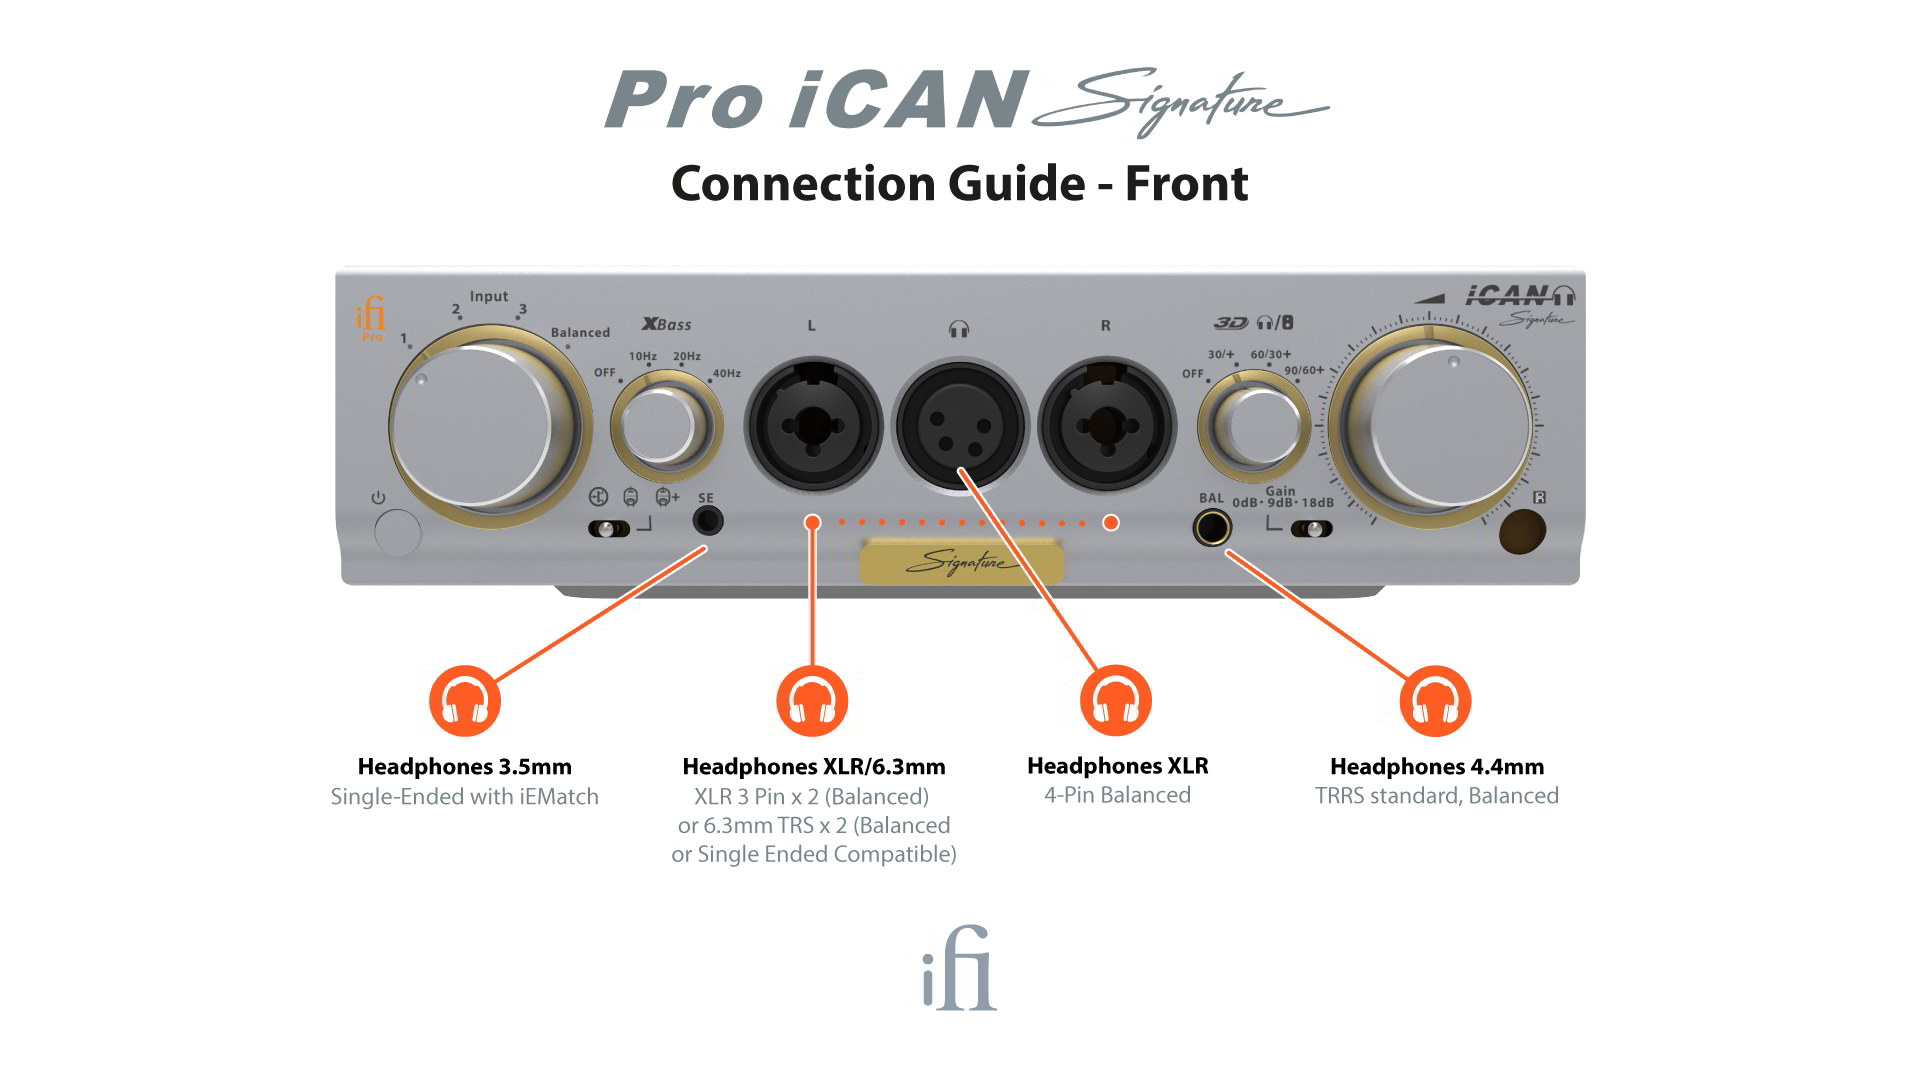 Pro iCAN Signature追加画像